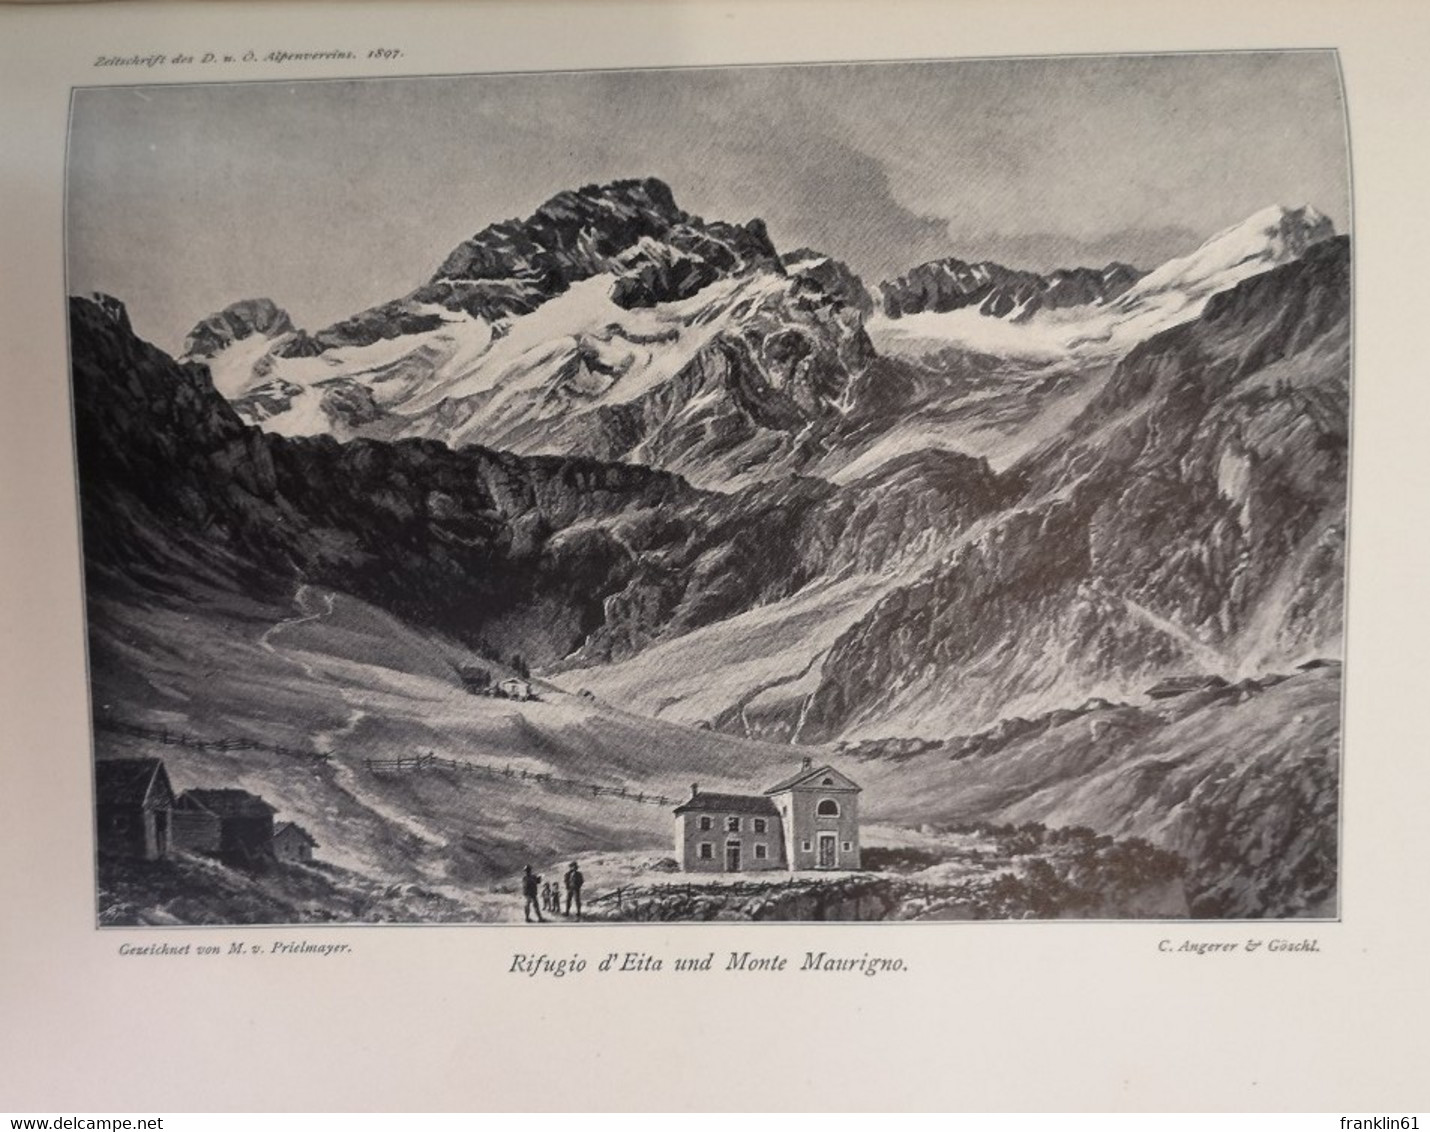 Zeitschrift des deutschen und österreichischen Alpenvereins. Jahrgang 1897. Band XXVIII.